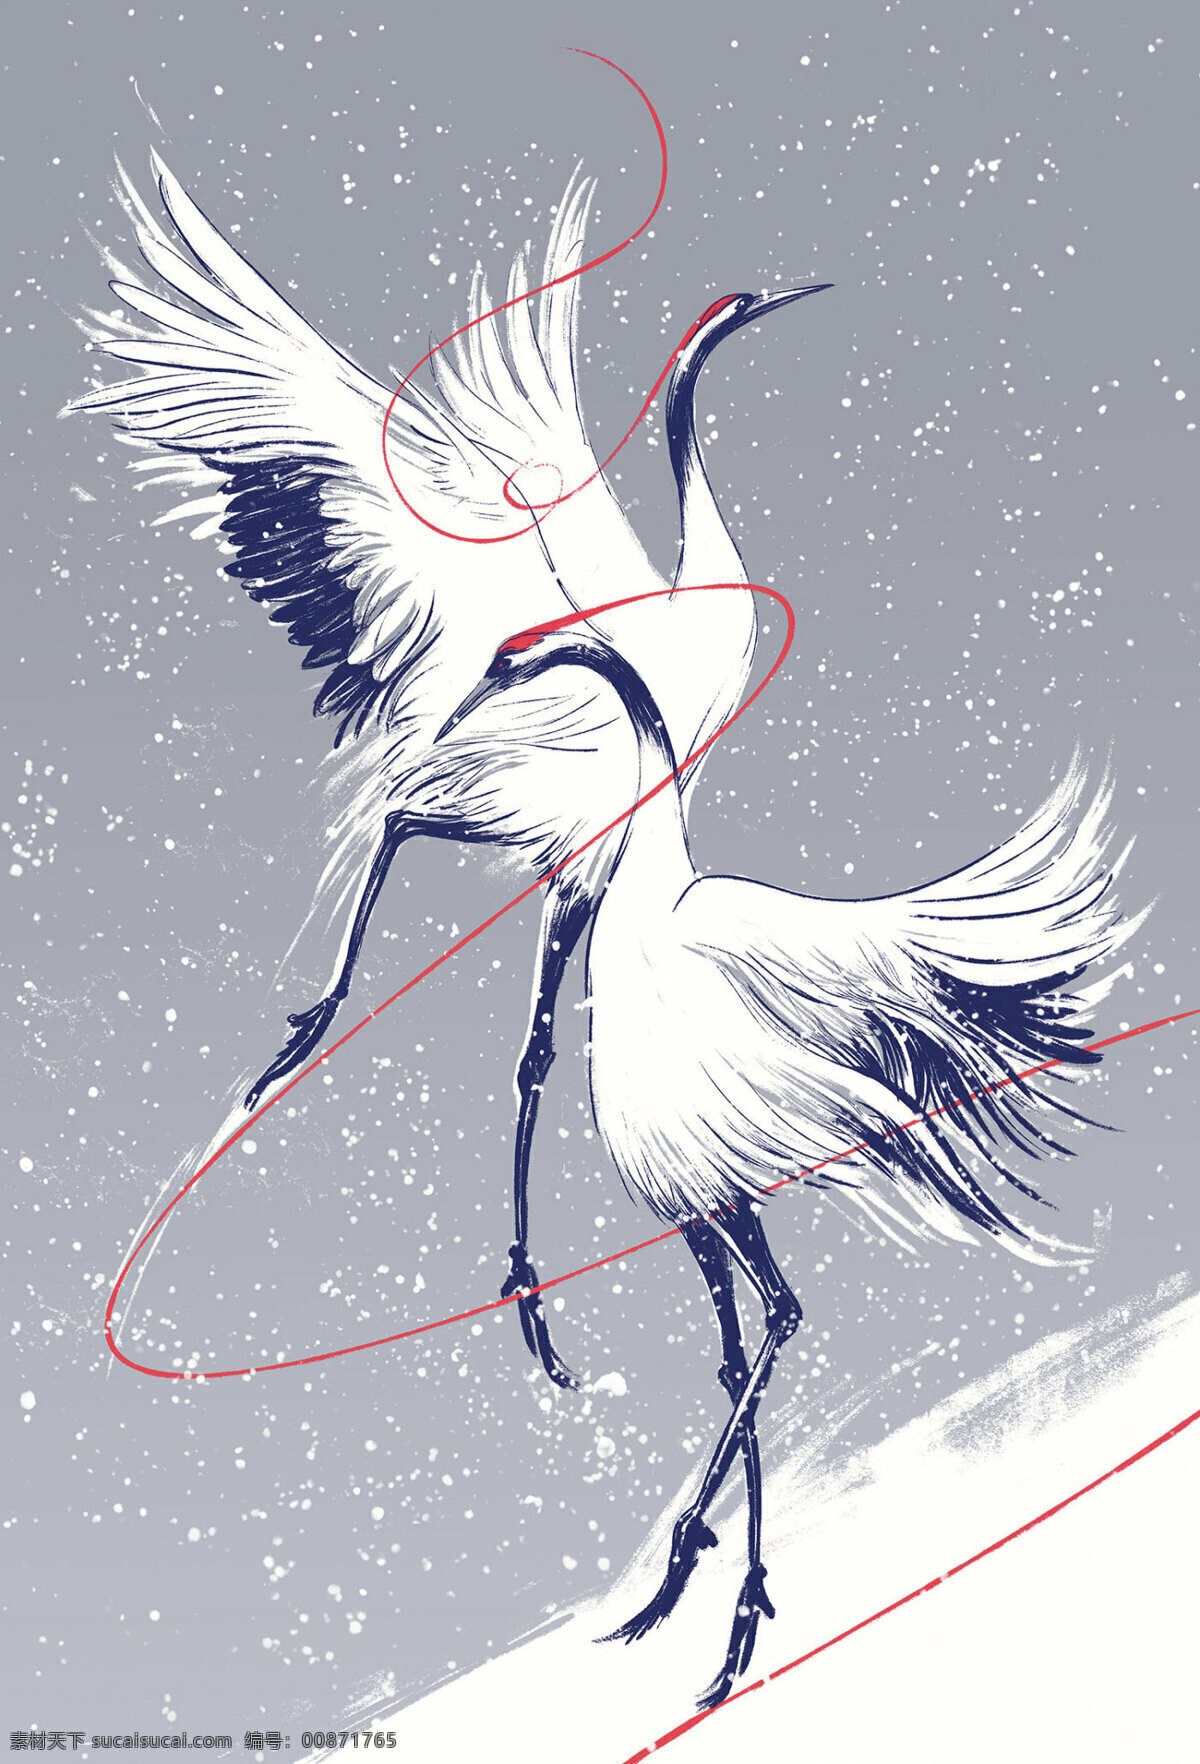 鹤舞图片 仙鹤 雪景 动物 节气 海报 壁纸 节日 动漫动画